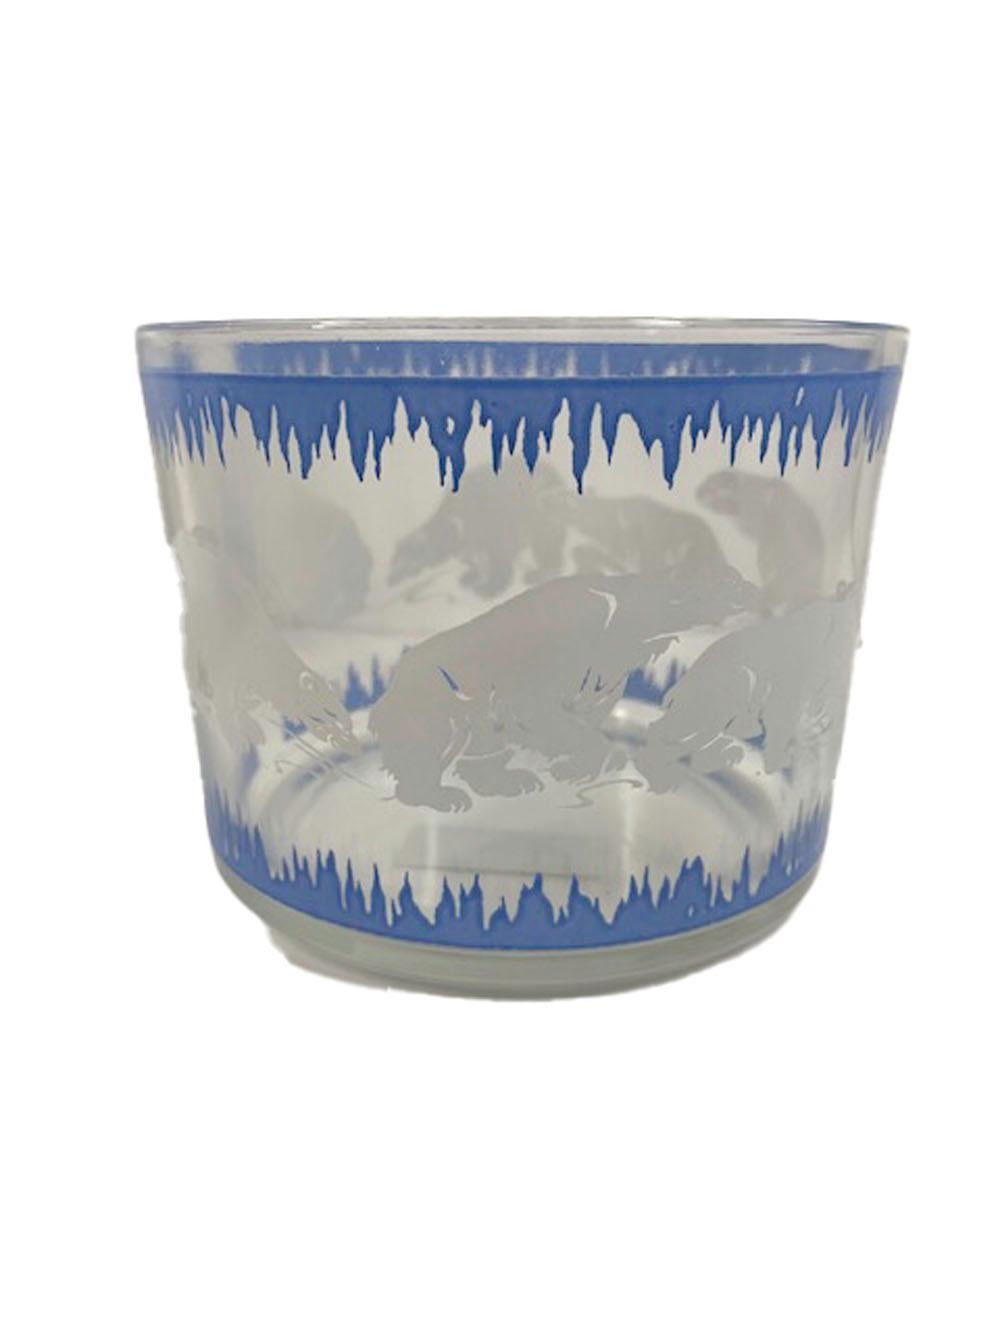 Art-Déco-Cocktailshaker und Eisschale aus der Sportsmans-Serie von Hazel-Atlas, dekoriert mit weißen Eisbären zwischen zwei Bändern aus blauen Eiszapfen.